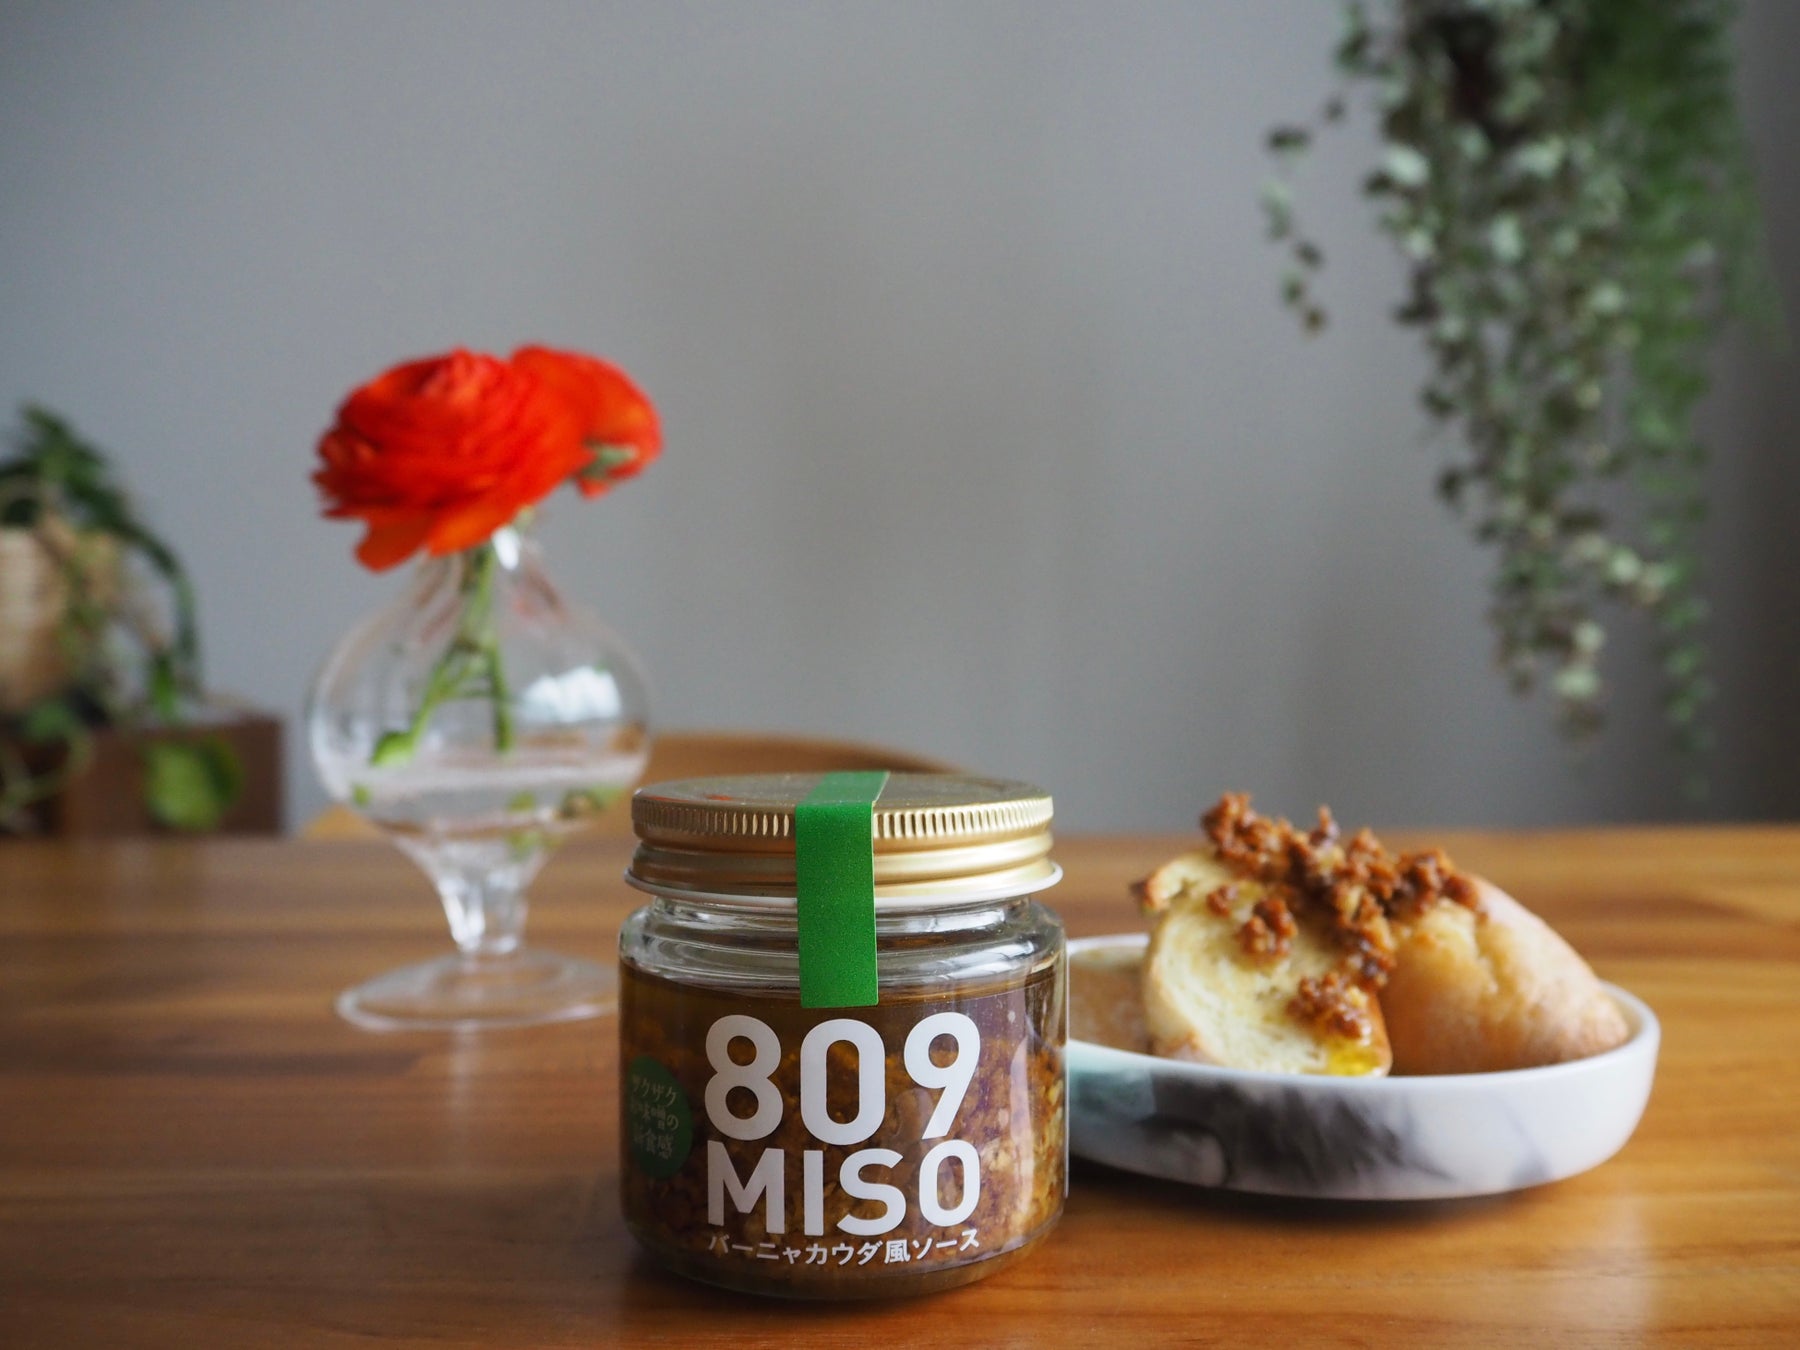 ザクザク食感の味噌で大人気の「809MISO」シリーズ。第三弾は、コクが味わいを深くする「バーニャカウダ風ソース」新発売